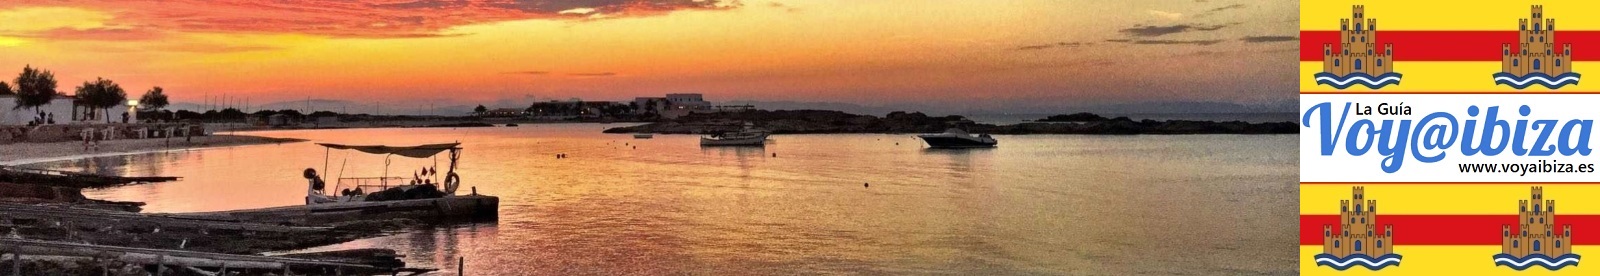 Formentera isla: Vistas varias (II)